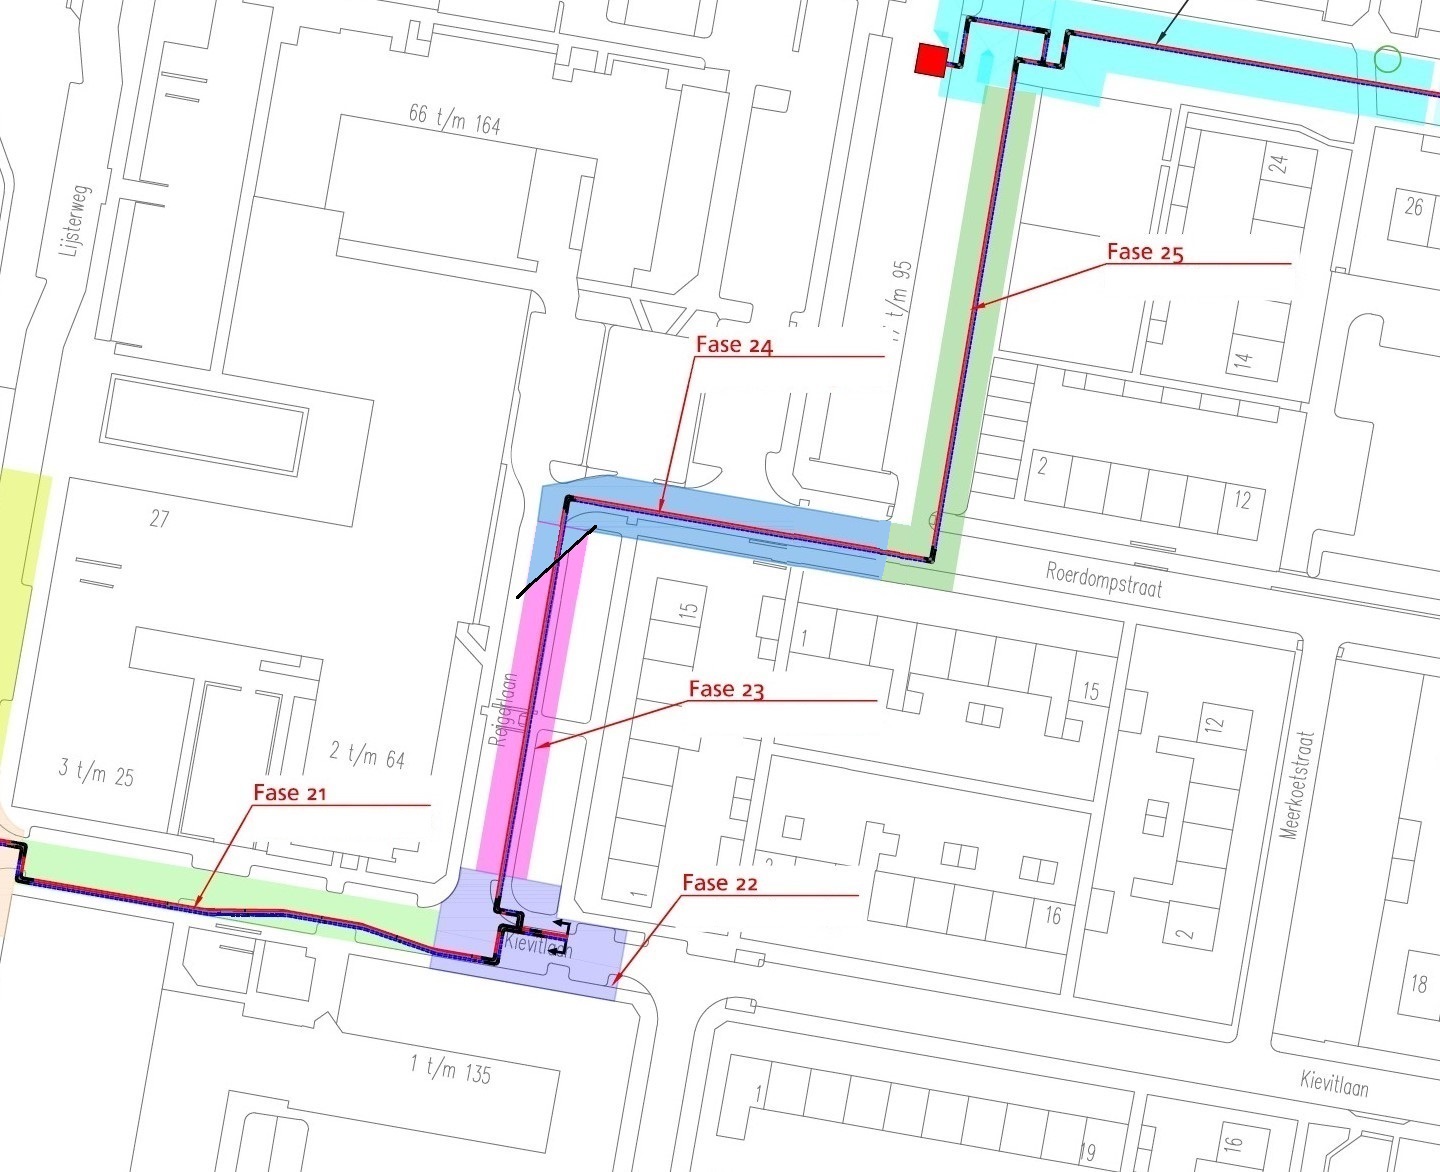 plattegrond van de omgeving waar de komende periode gewerkt wordt aan het warmtenet Sliedrecht - fase 24 met blauwe markering (Roerdompstraat), fase 23 met roze markering (Reigerlaan)